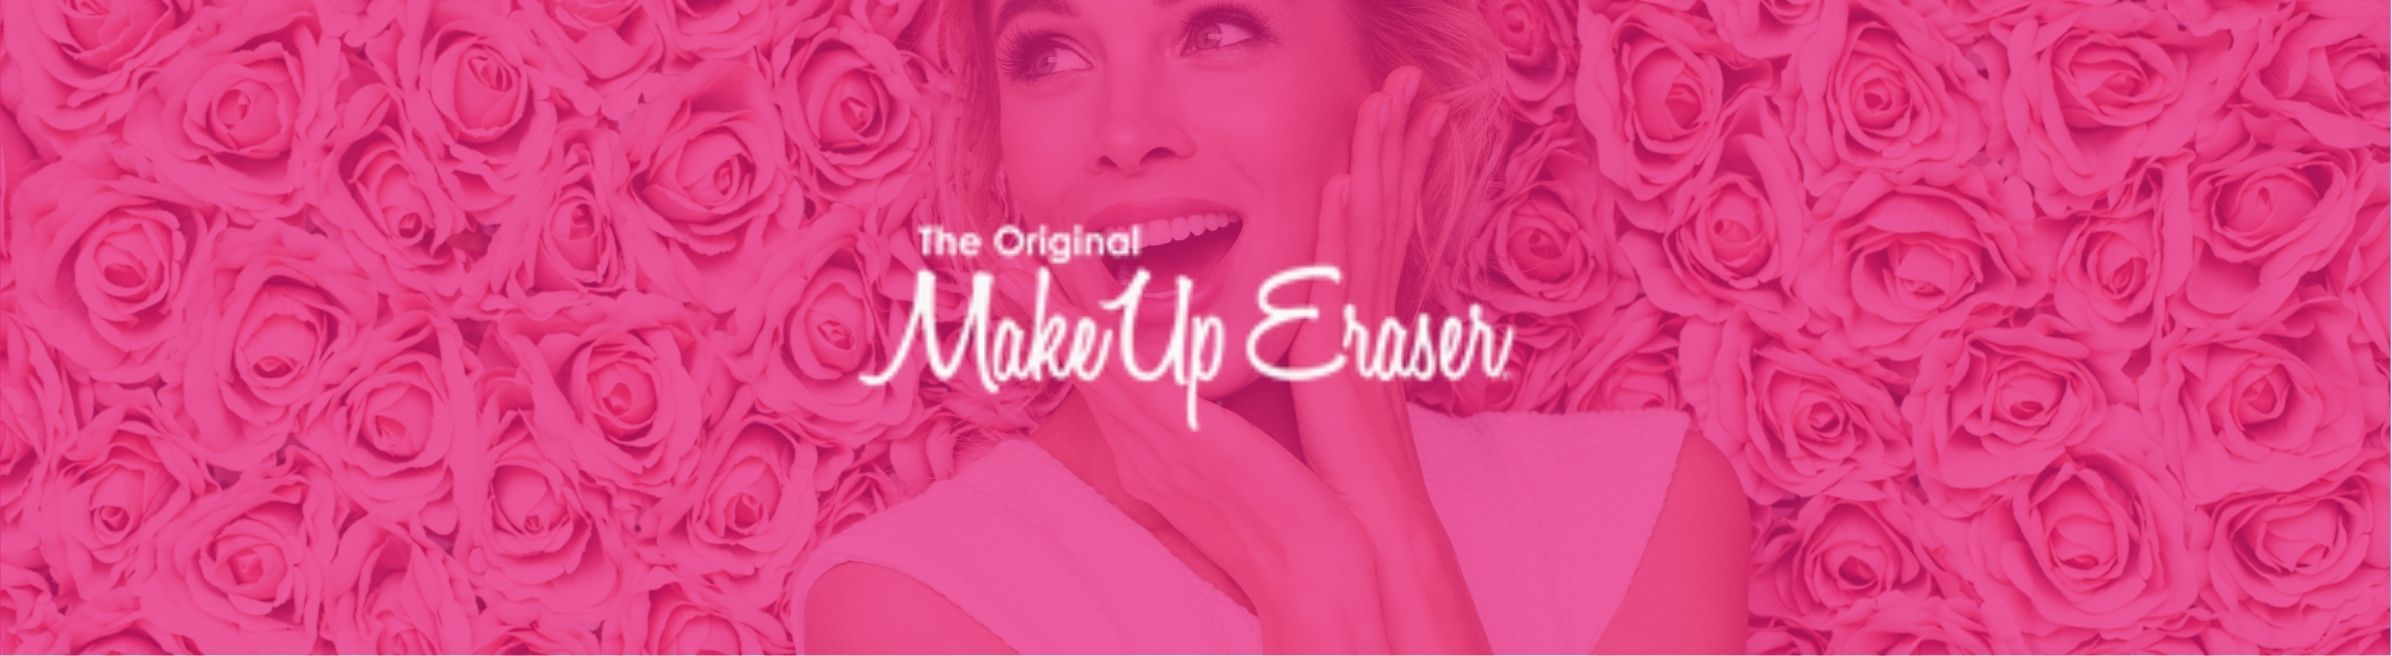 The original make up remover